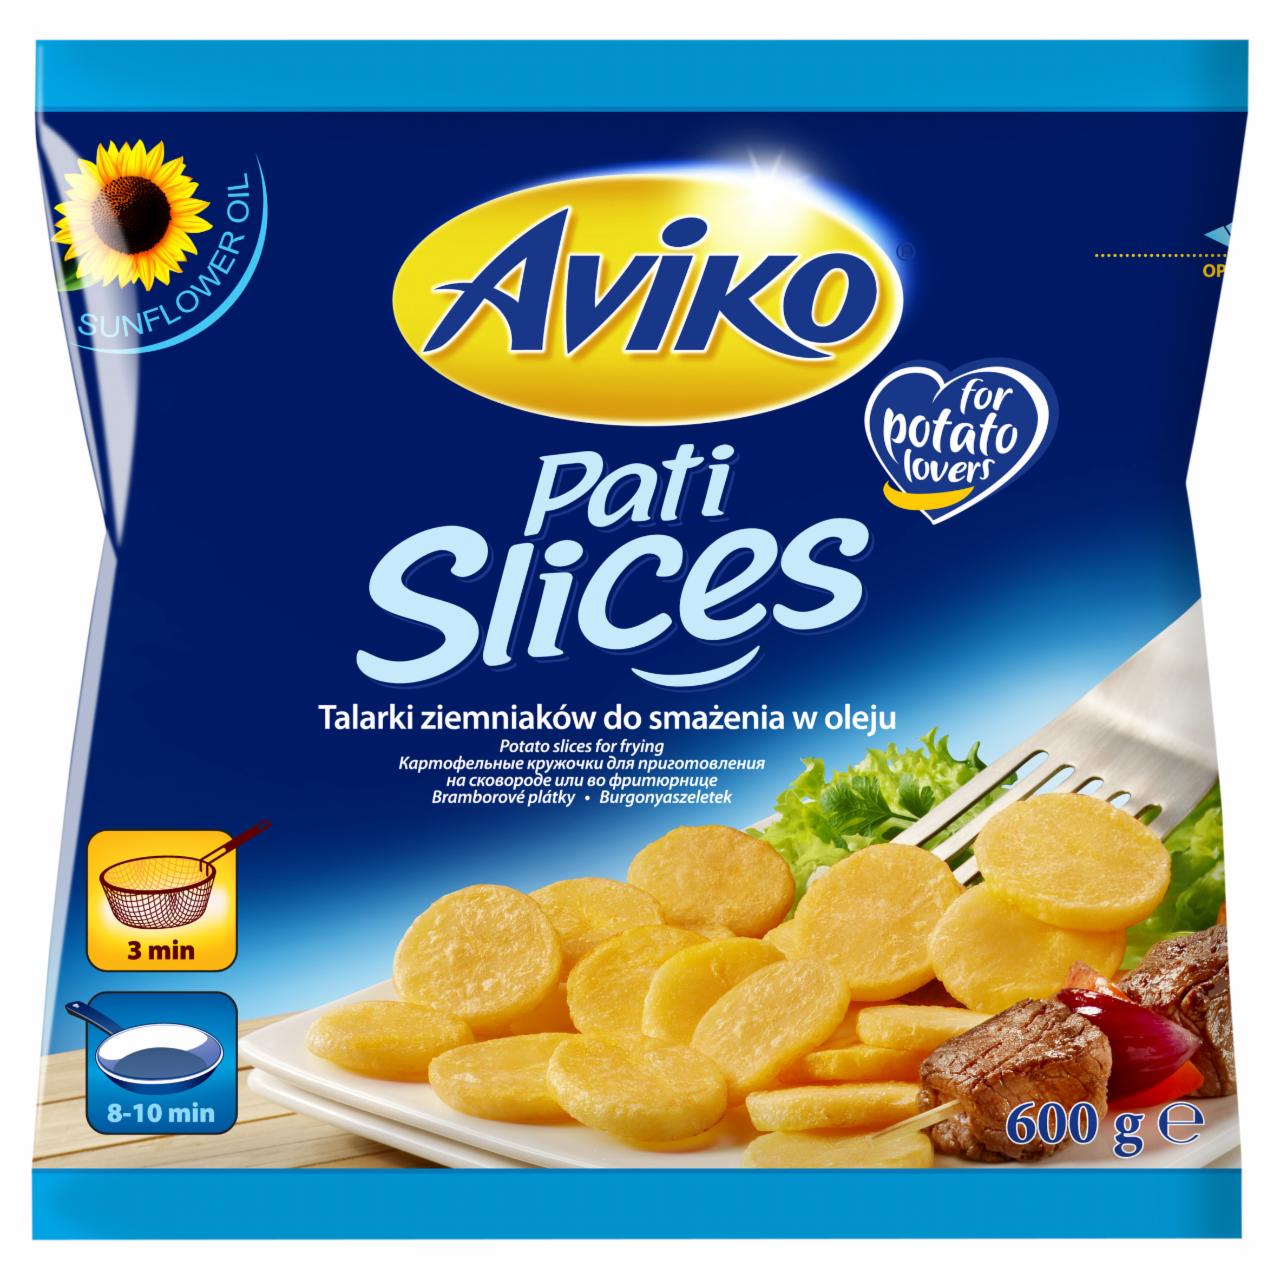 Zdjęcia - Aviko Pati Slices Talarki ziemniaków do smażenia w oleju 600 g